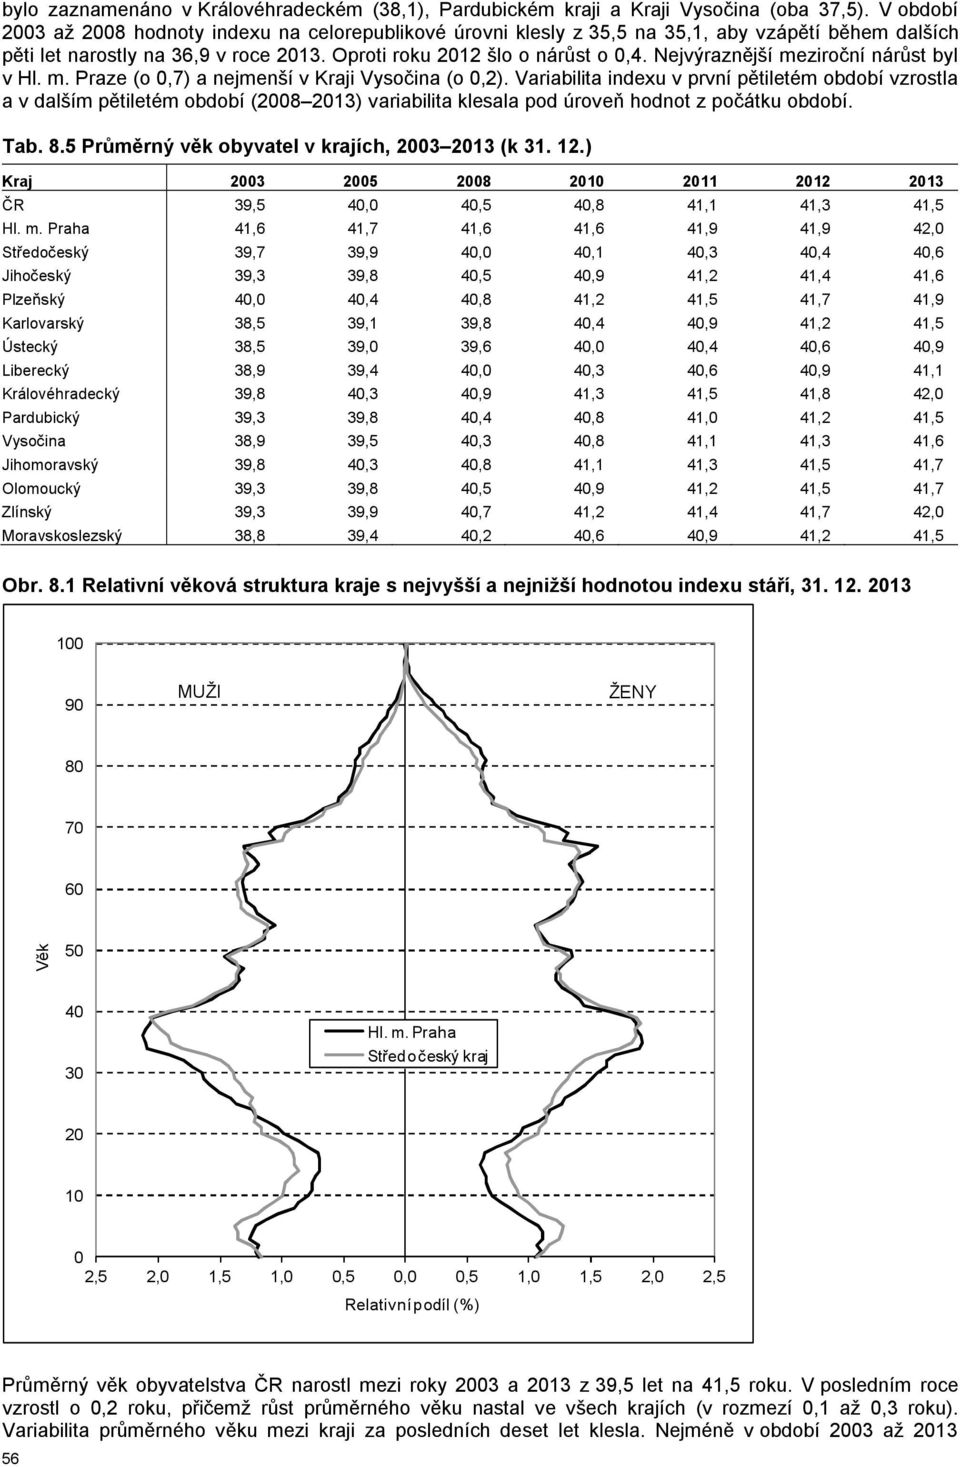 Nejvýraznější meziroční nárůst byl v Hl. m. Praze (o 0,7) a nejmenší v i Vysočina (o 0,2).